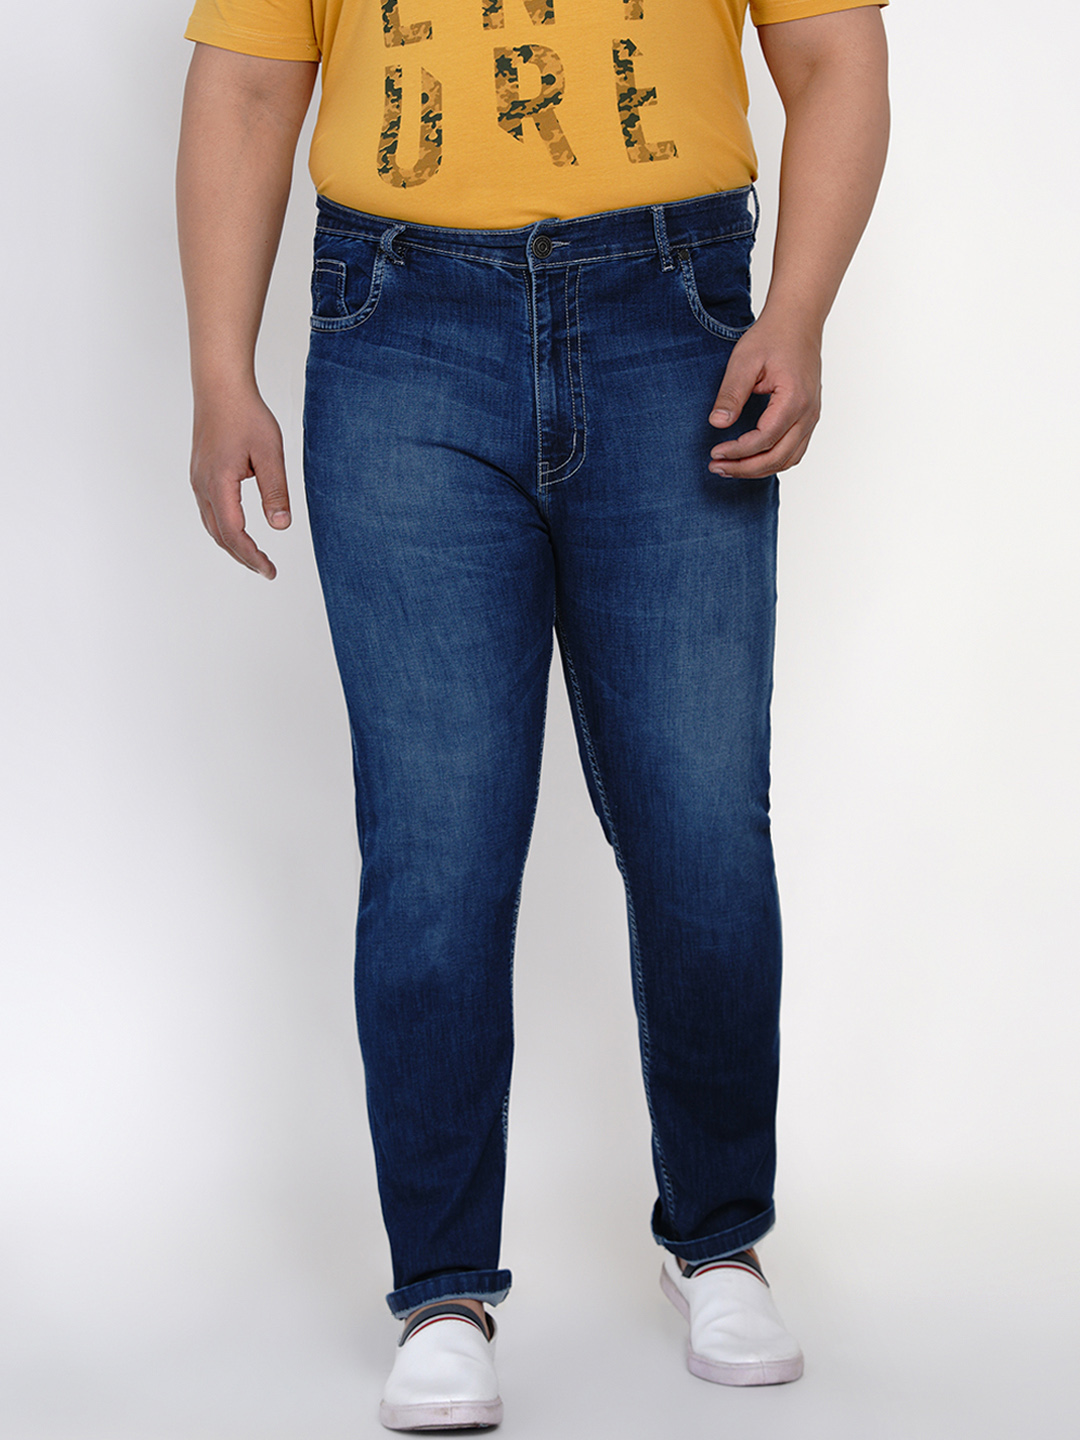 bottomwear/jeans/JPJ12118/jpj12118-1.jpg